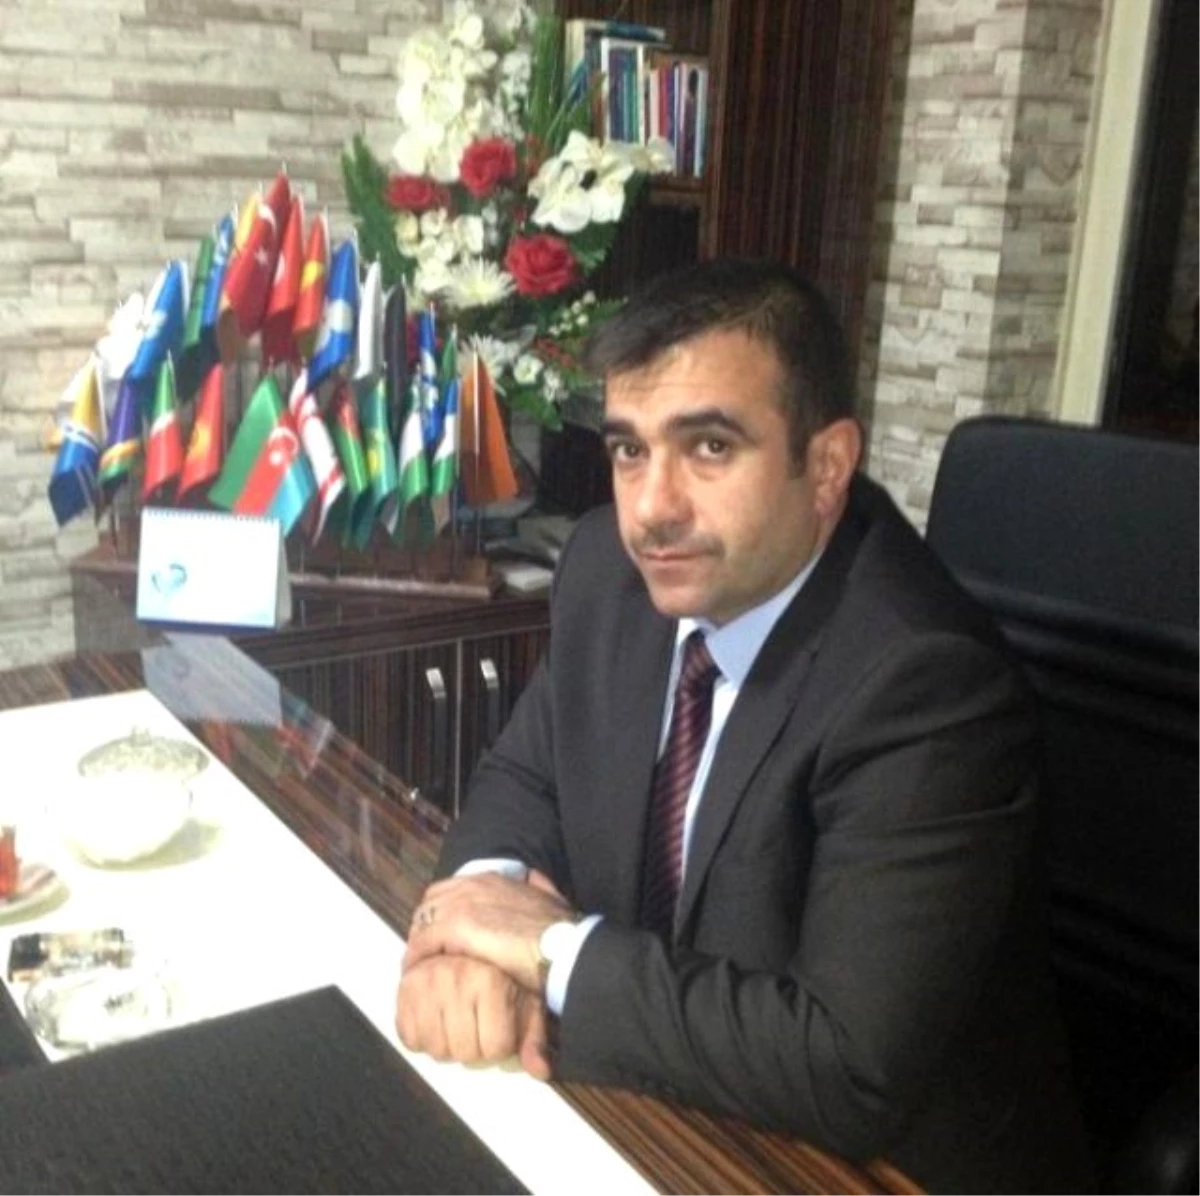 MHP İl Başkanı Anatepe: "Polis Teşkilatımız Cumhuriyetimizin En Köklü Kurumlarından Birisidir"